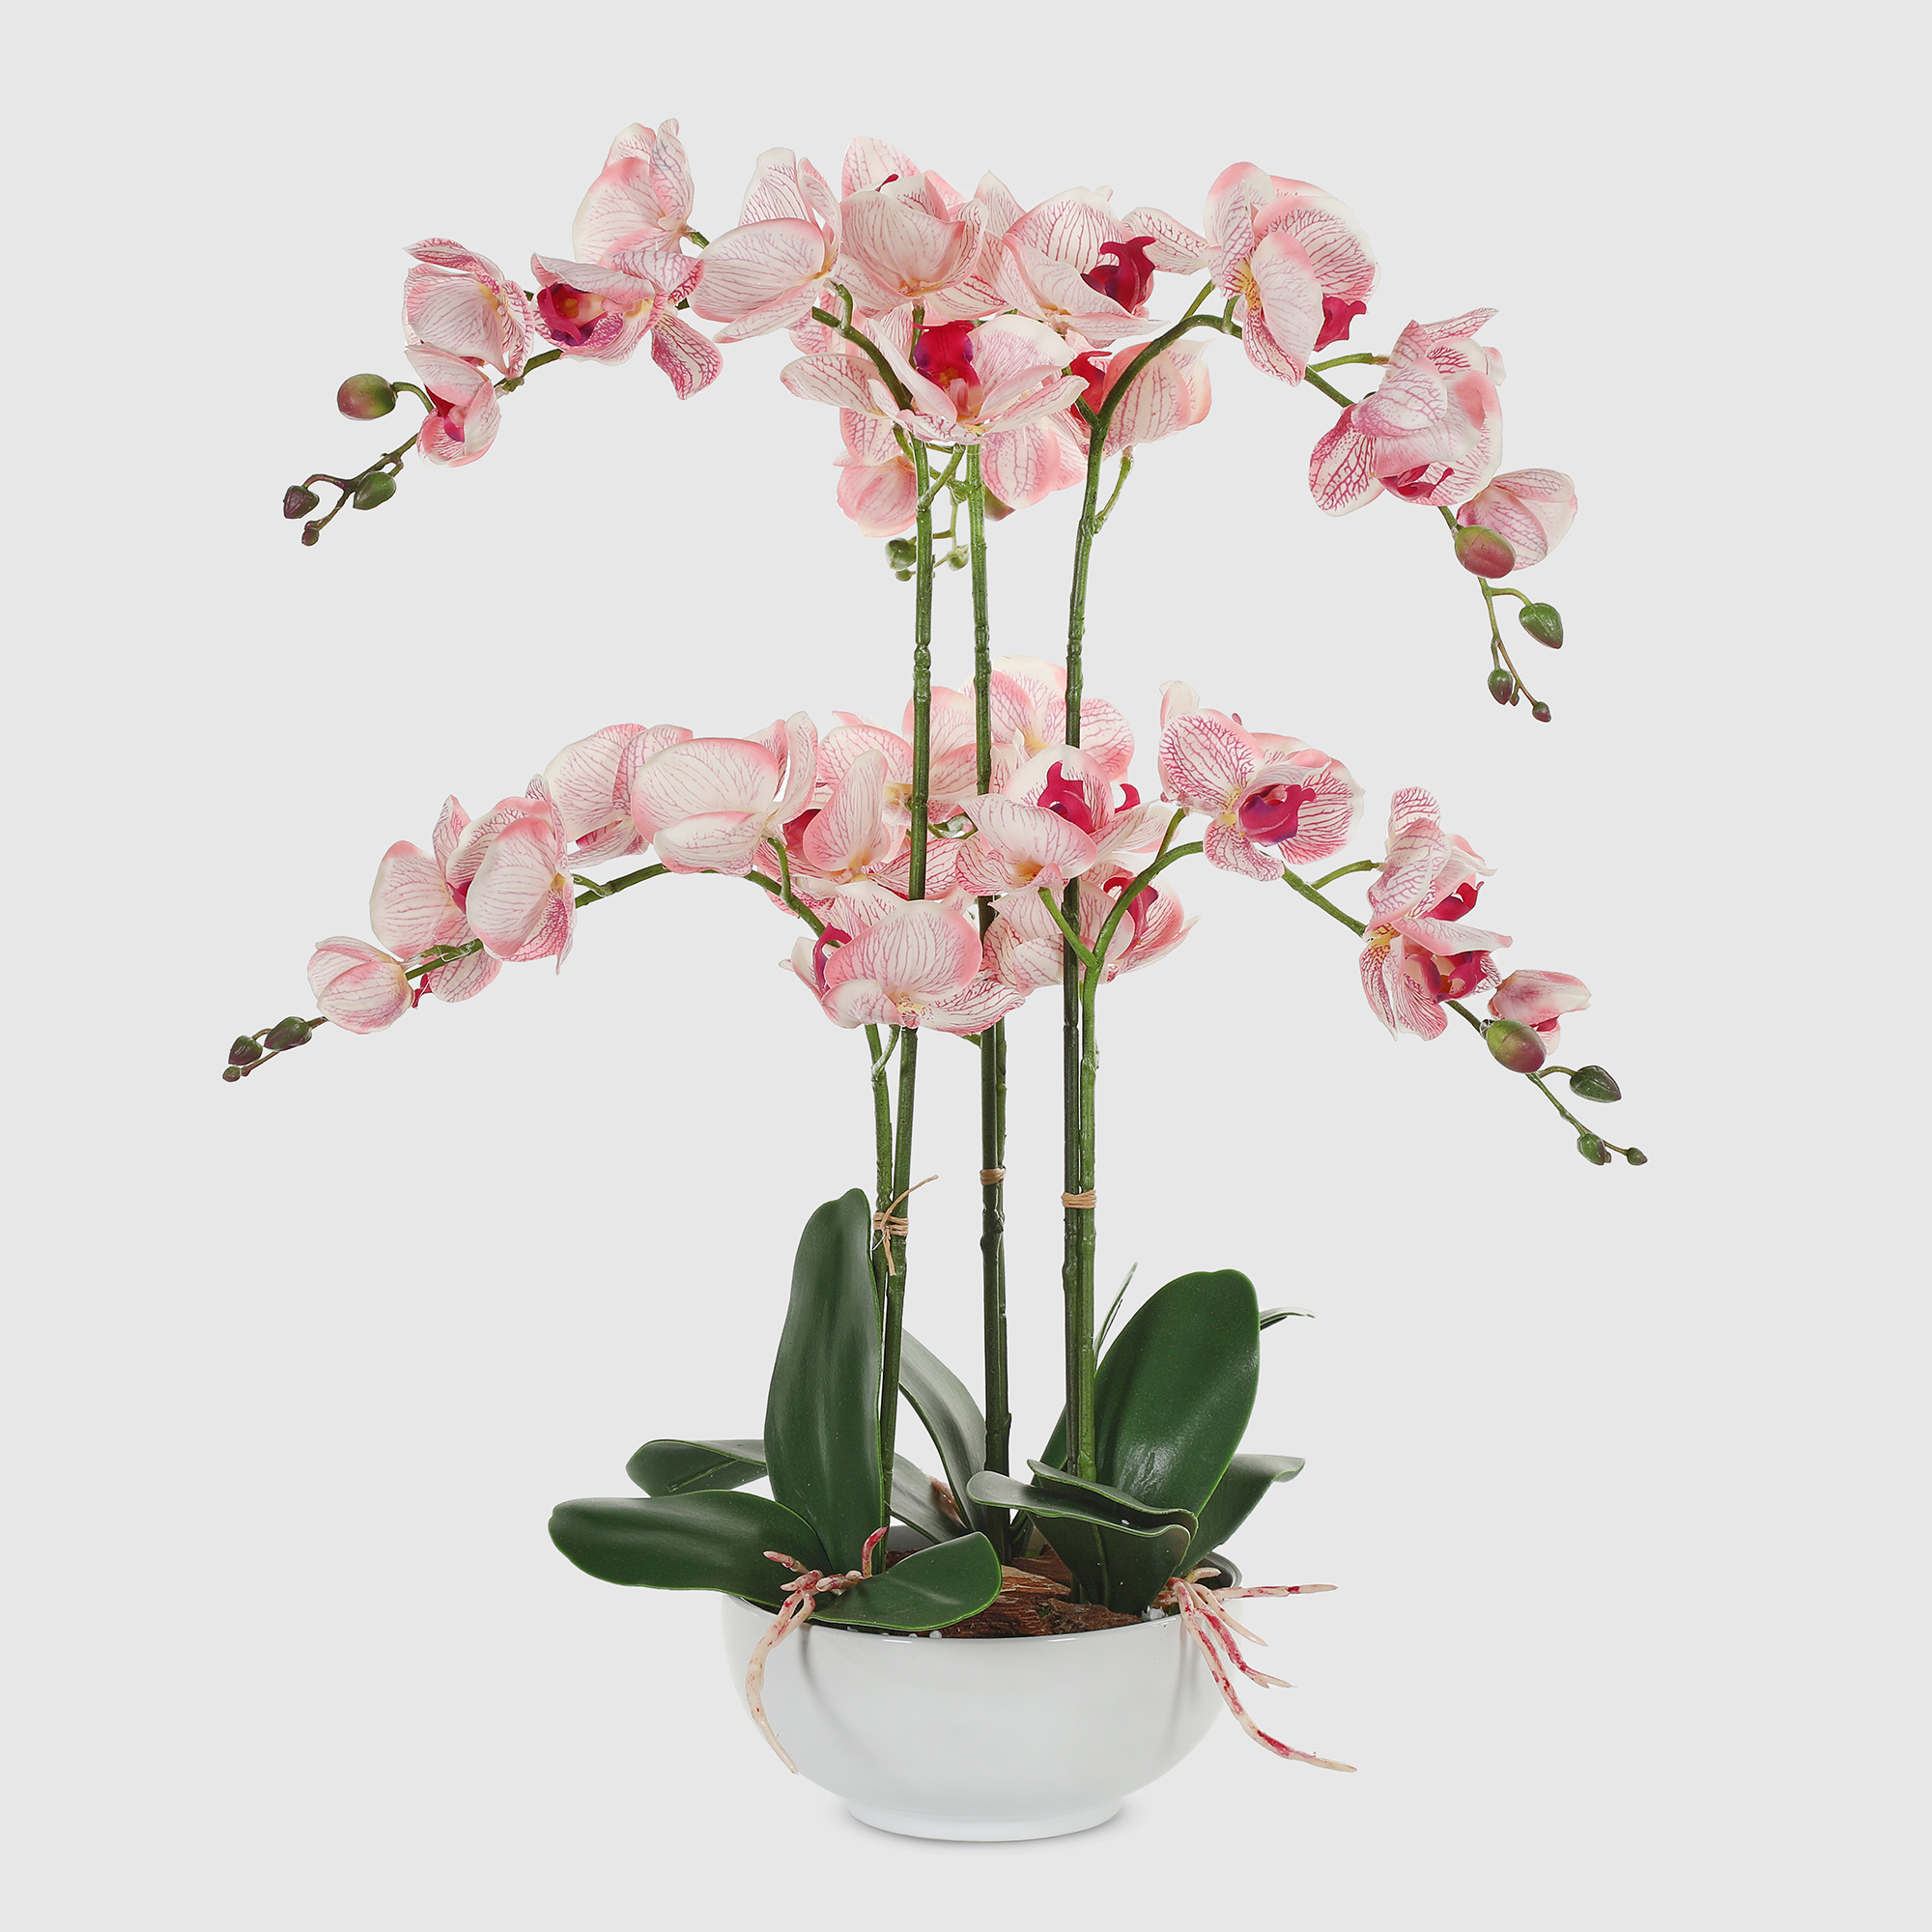 Орхидея в белом кашпо Конэко-О 556_x6_10157 60 см плющ конэко о ампельный с мелким листом высота 60 см в кашпо 14х14х12 см